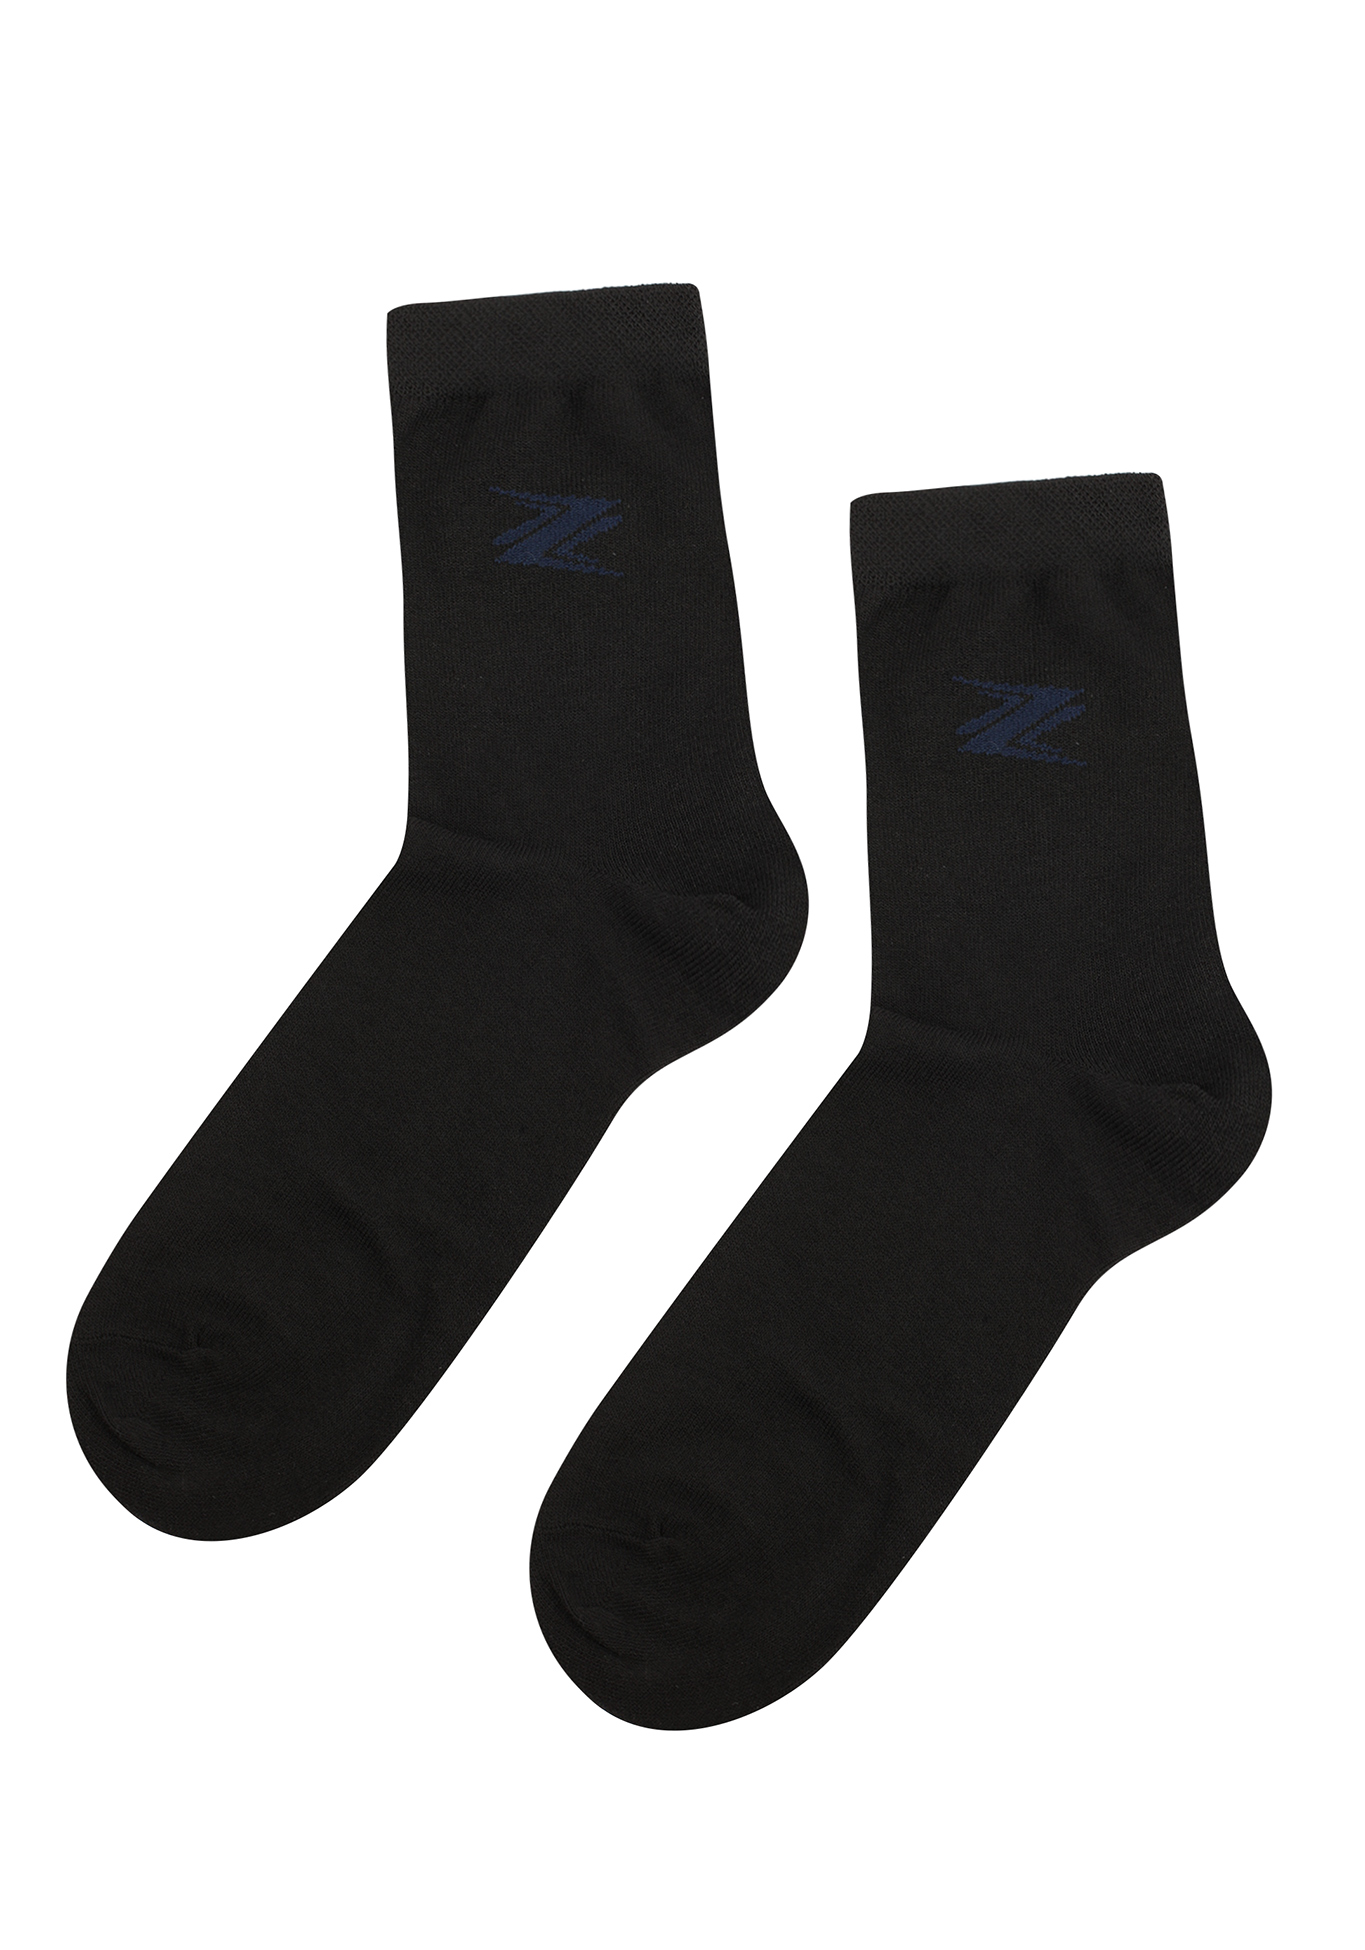 Комплект мужских носков с рисунком, 6 пар, цвет в ассортименте, размер 27 - фото 3